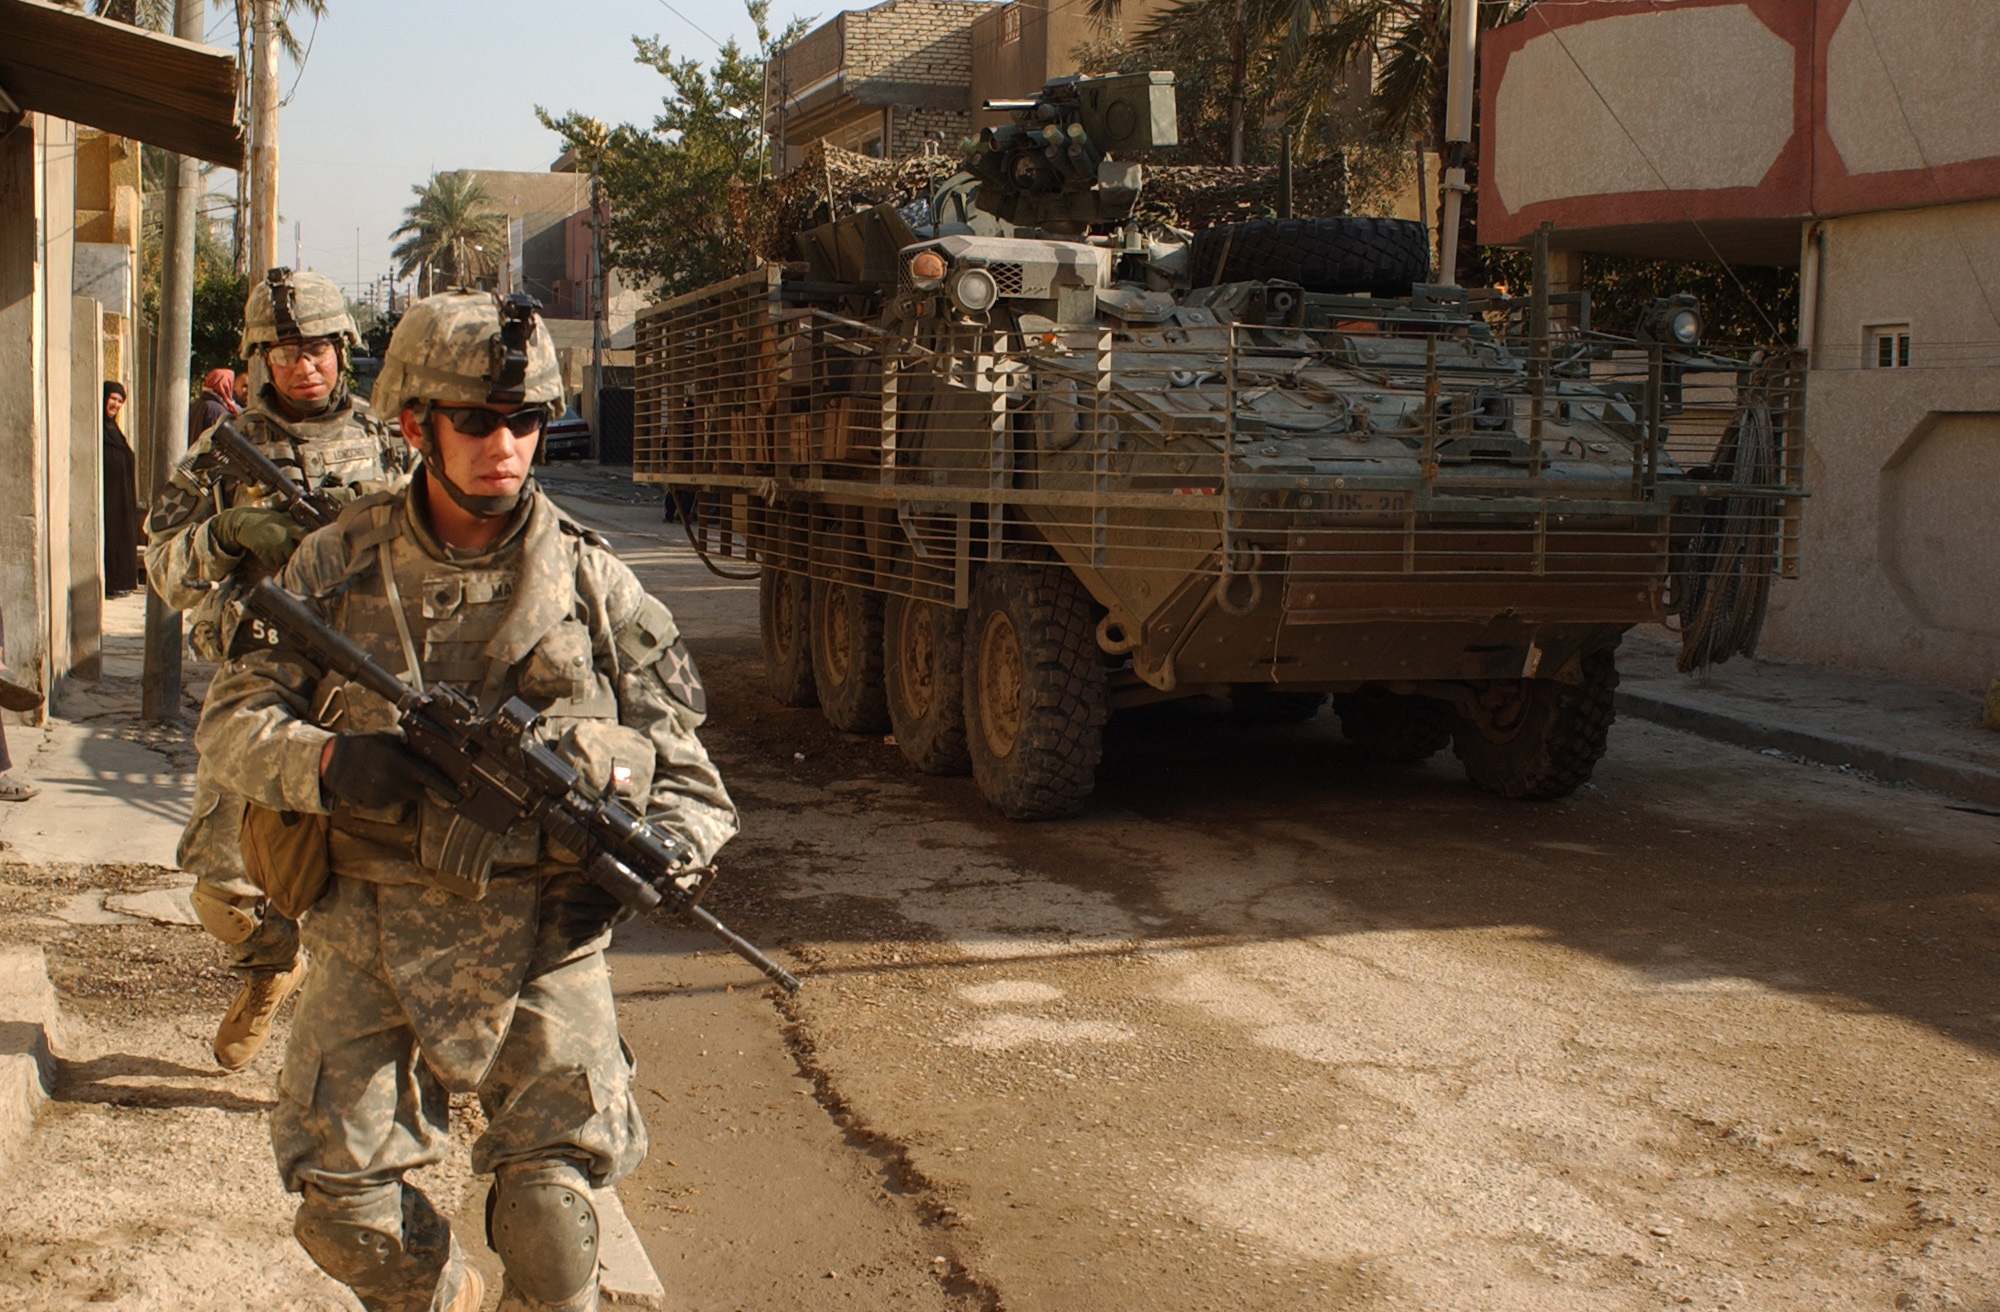 Американские военные в ираке. Ирак спецназ армия США 2003. Солдаты армии США В Ираке. Снаряжение солдат США В Ираке 2003.